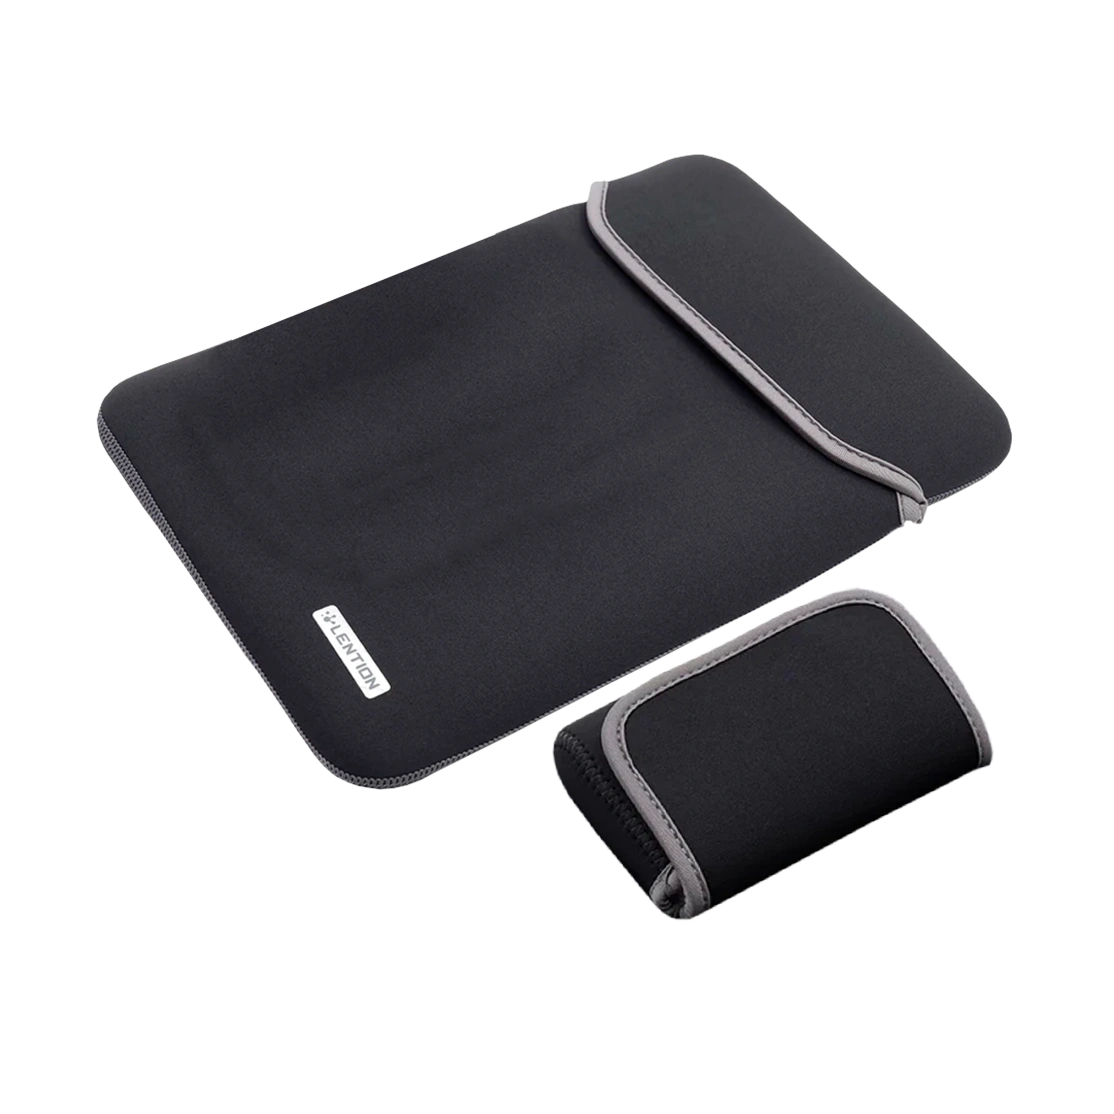 کیف مک بوک 13 اینچی و کیف لوازم جانبی لنشن مدل PCB-B370